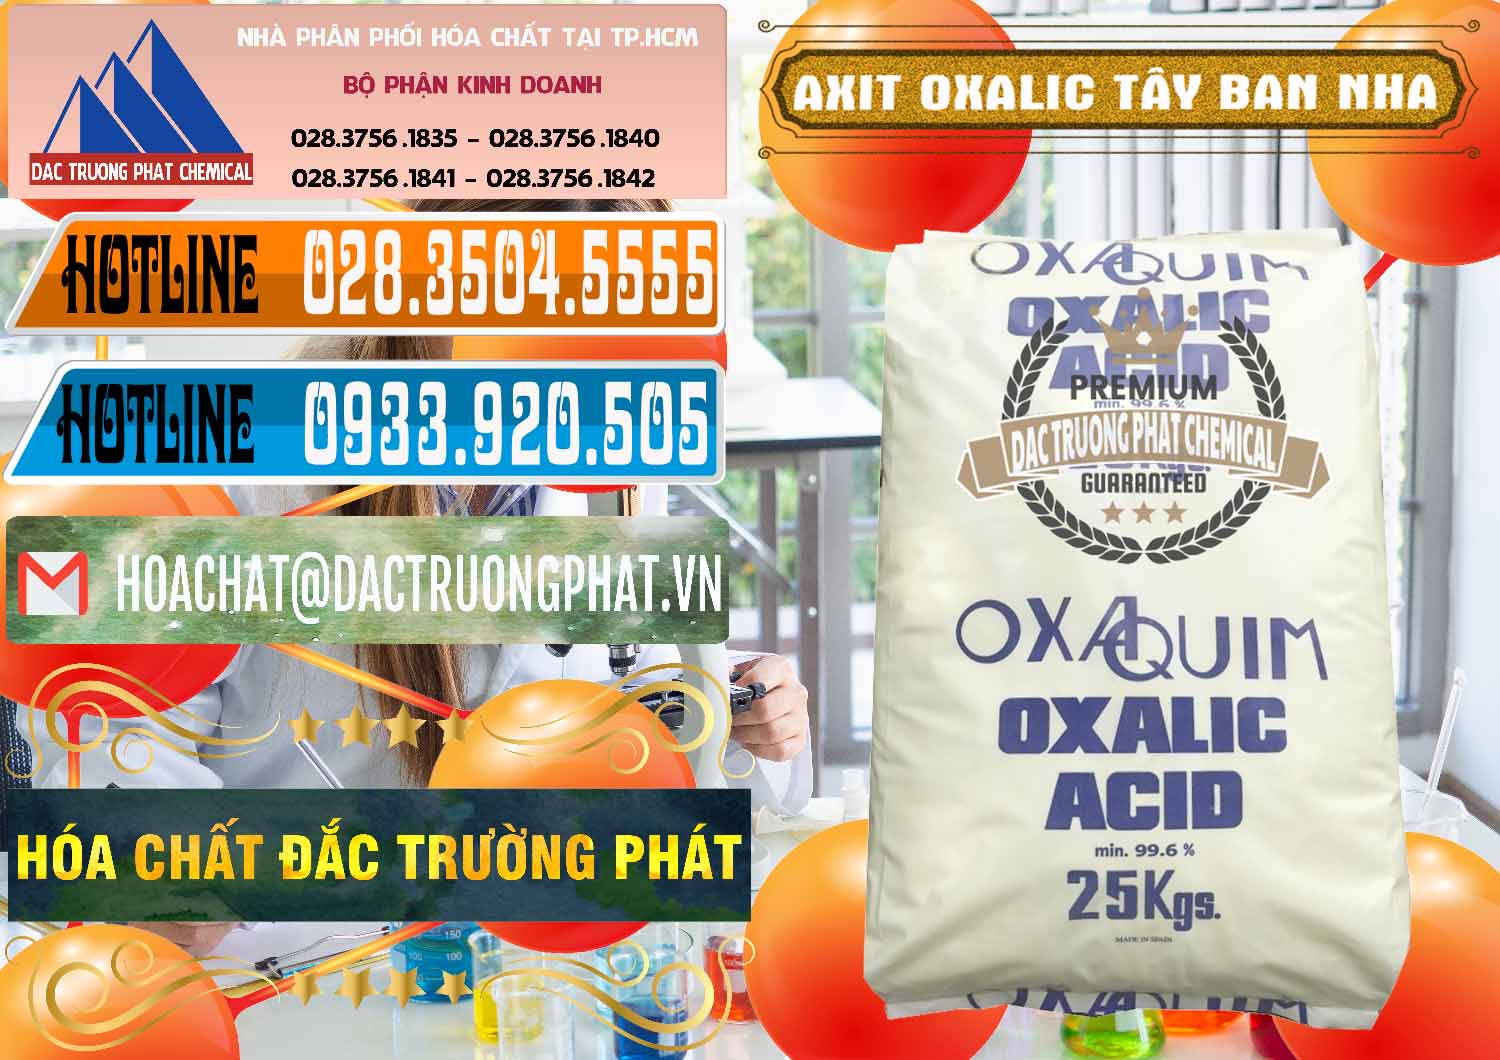 Cty bán ( cung ứng ) Acid Oxalic – Axit Oxalic 99.6% Tây Ban Nha Spain - 0269 - Nơi chuyên kinh doanh - cung cấp hóa chất tại TP.HCM - stmp.net